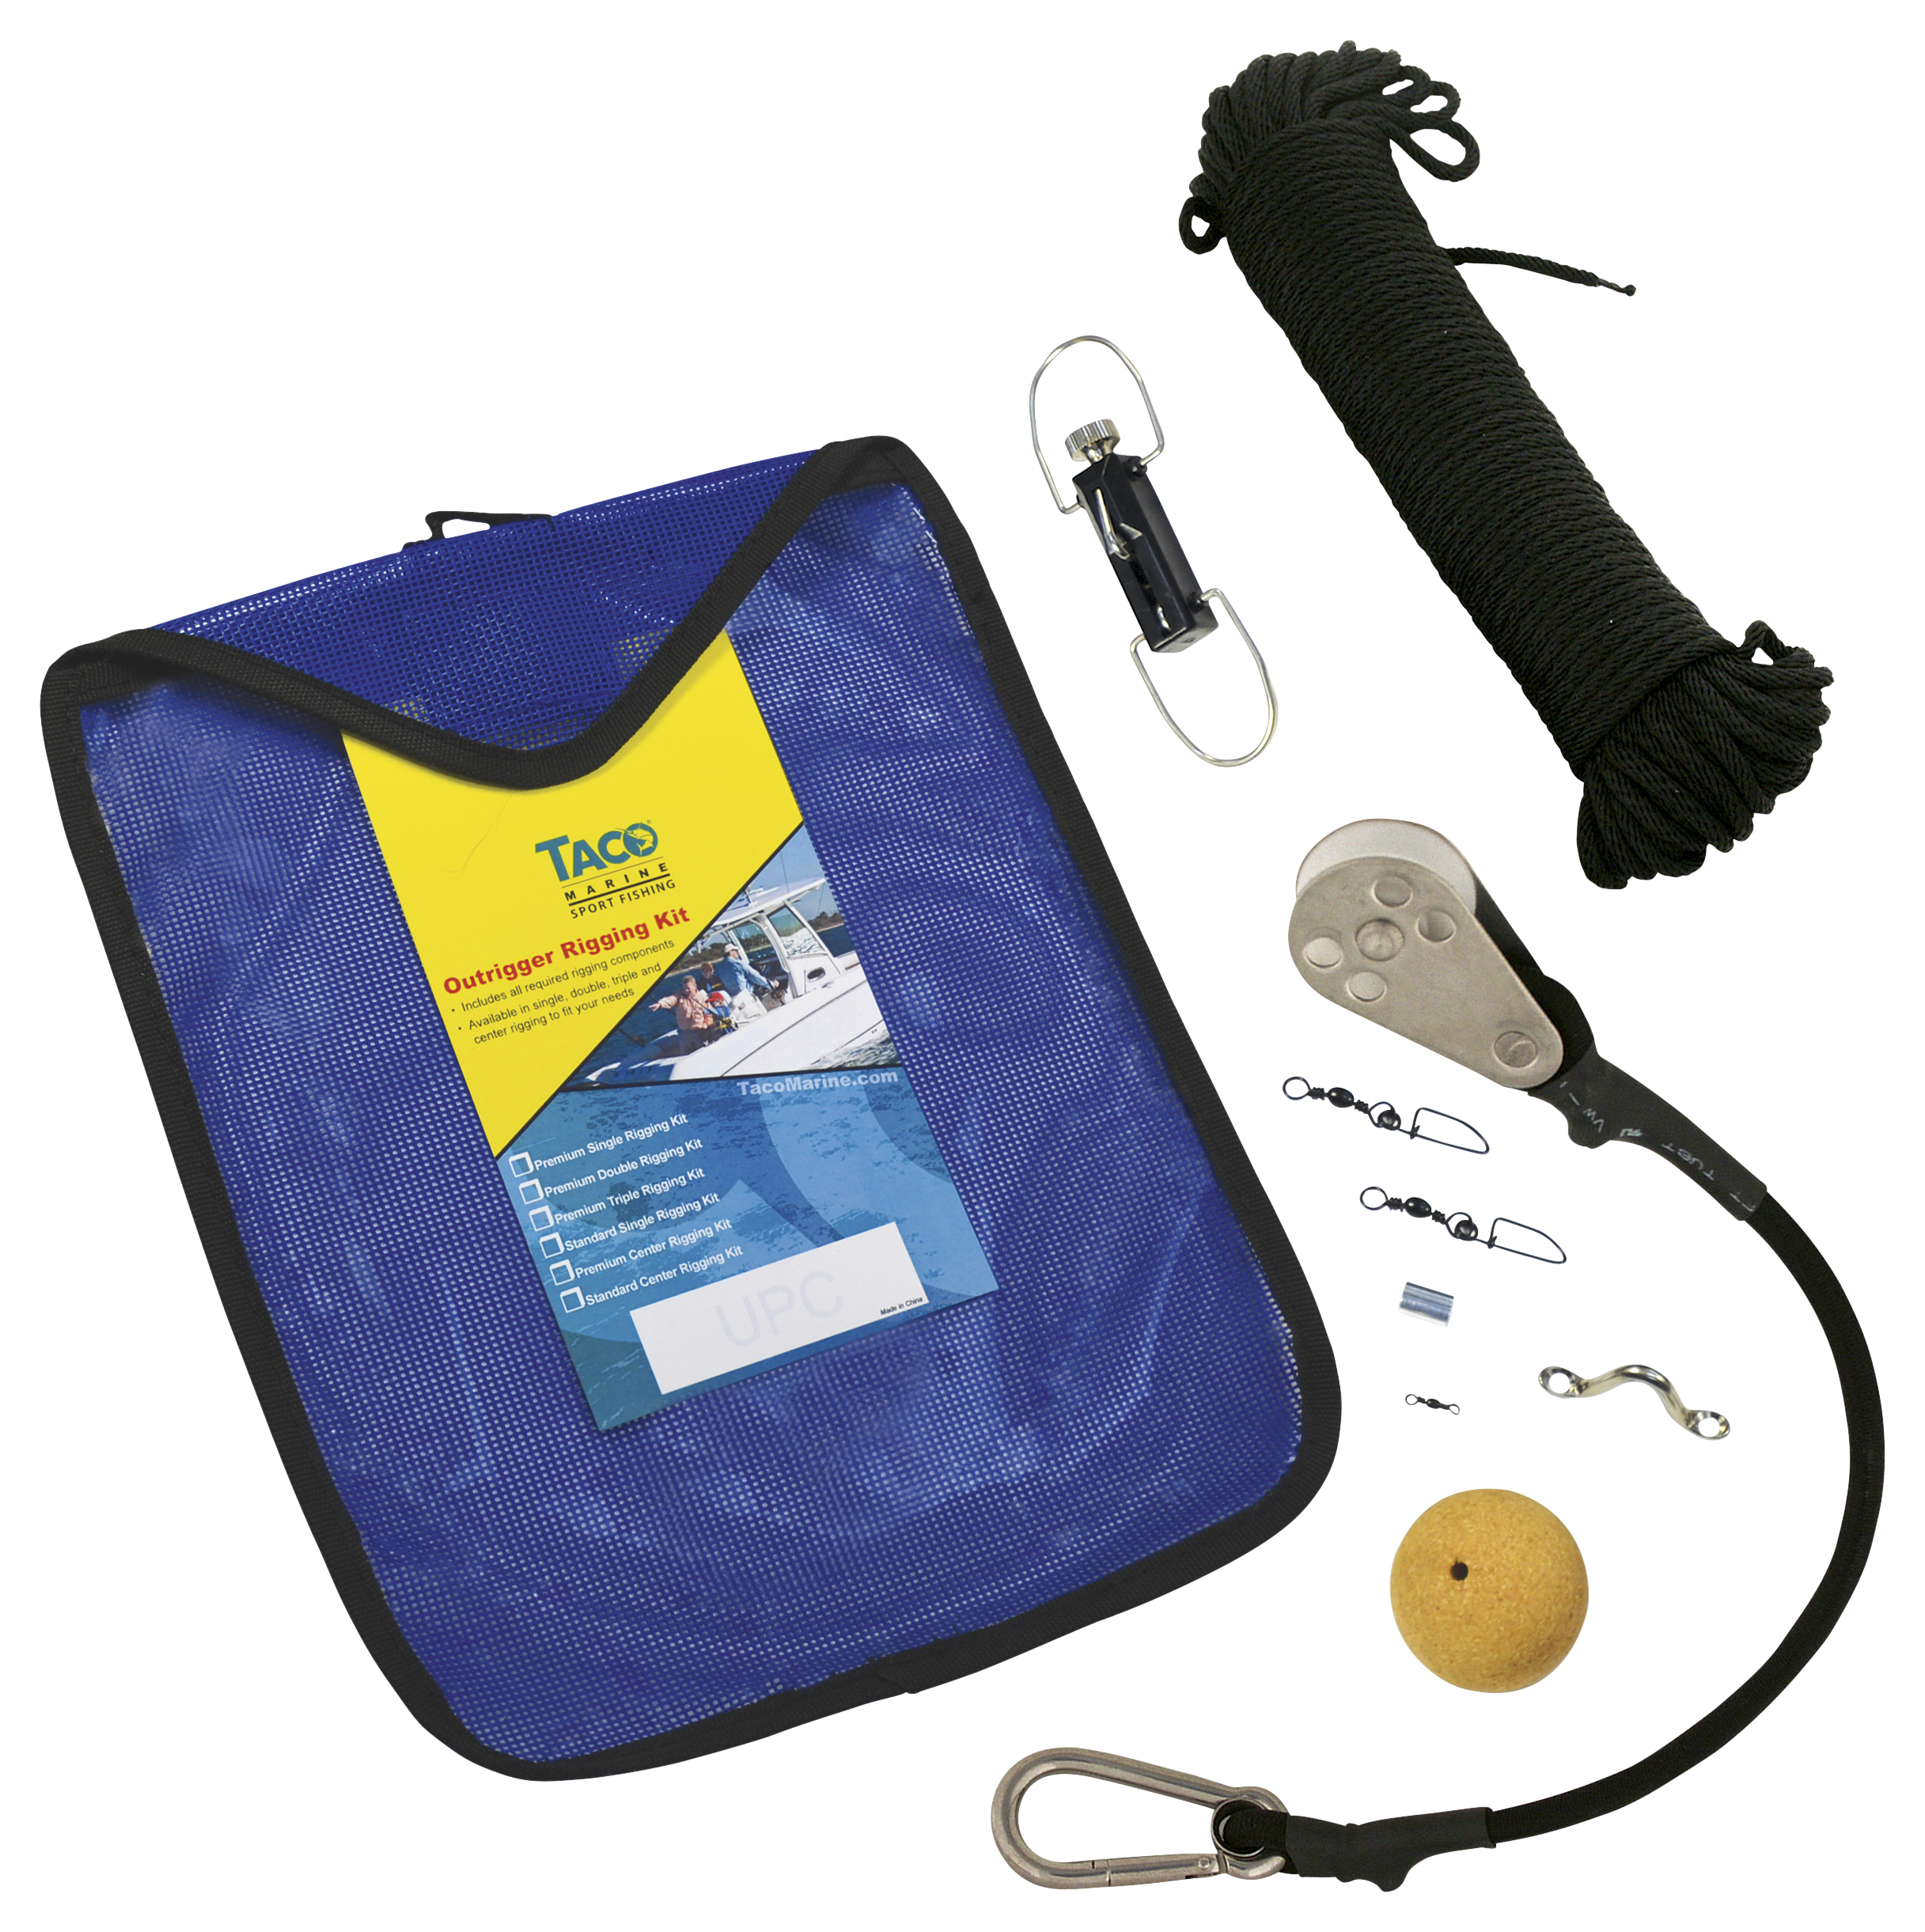 Taco Standard Rigging Kit